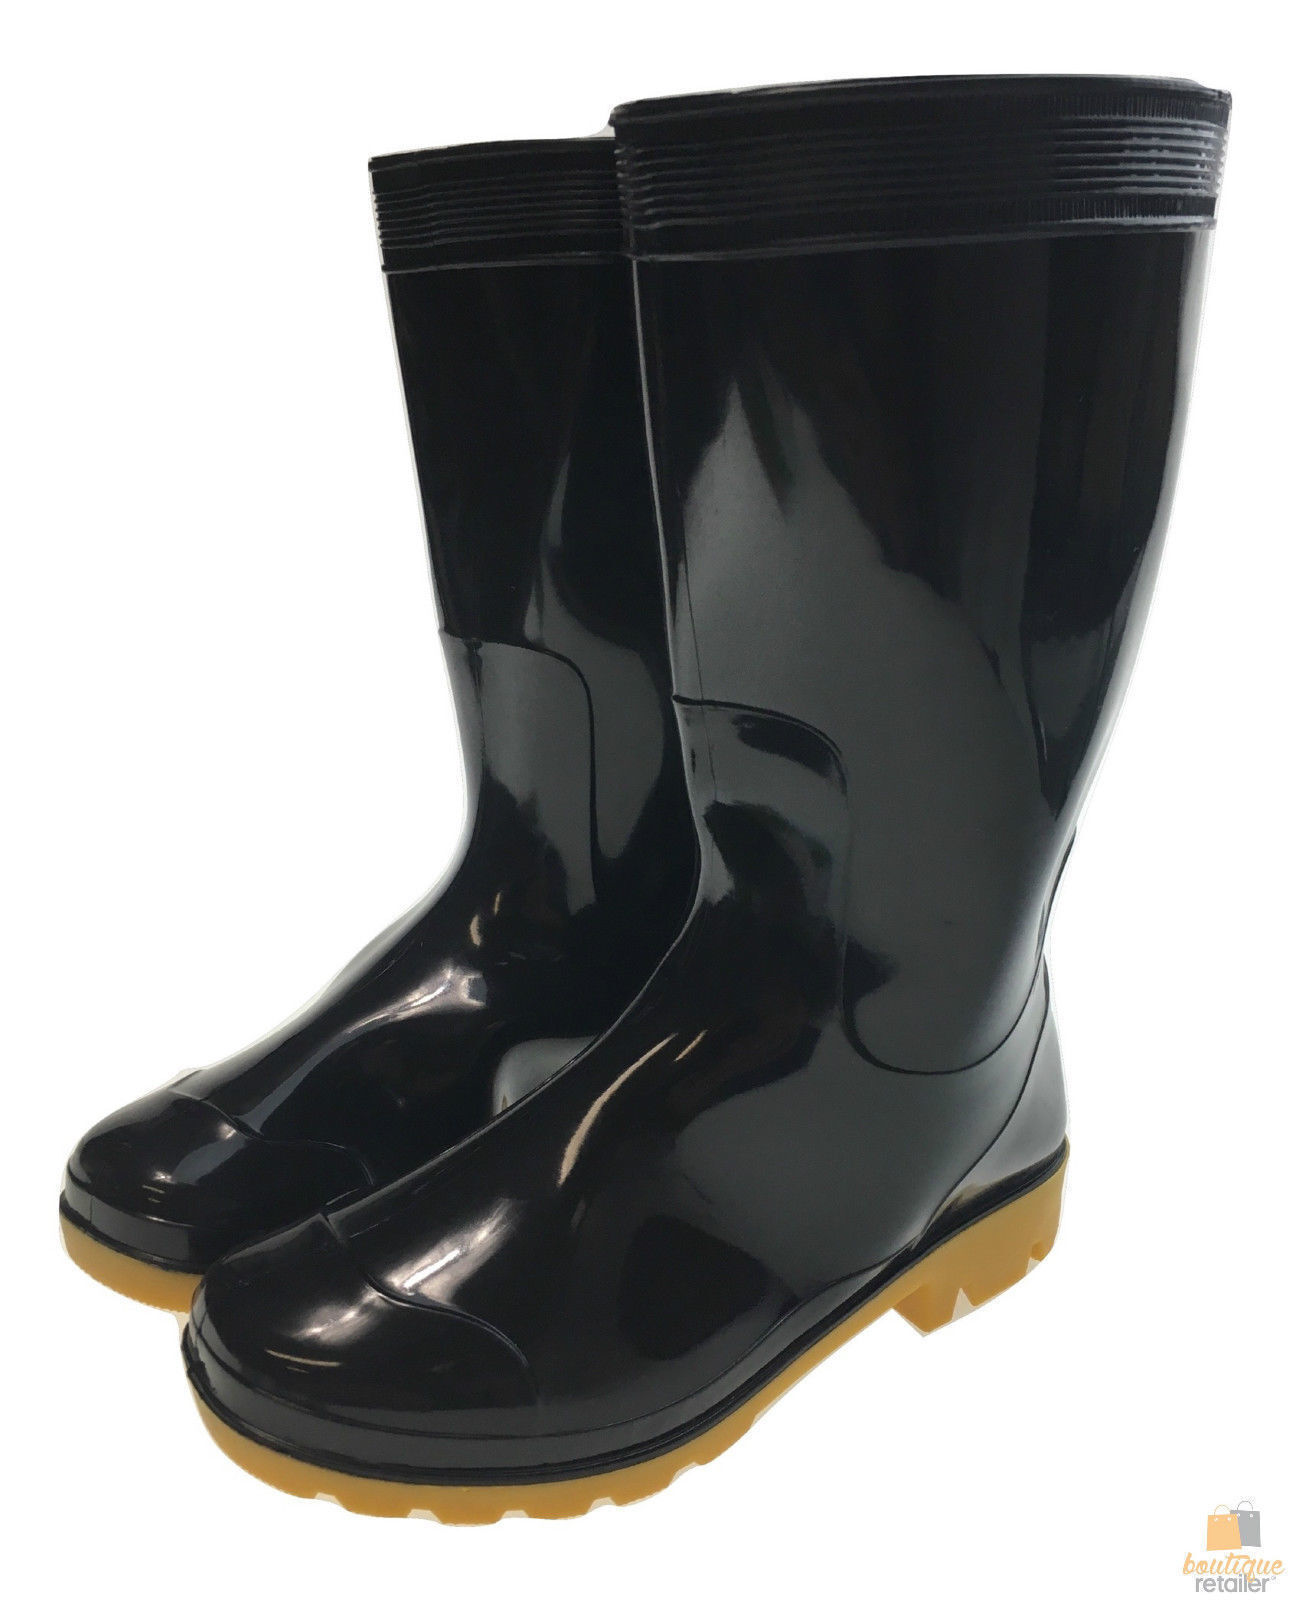 rain work boots